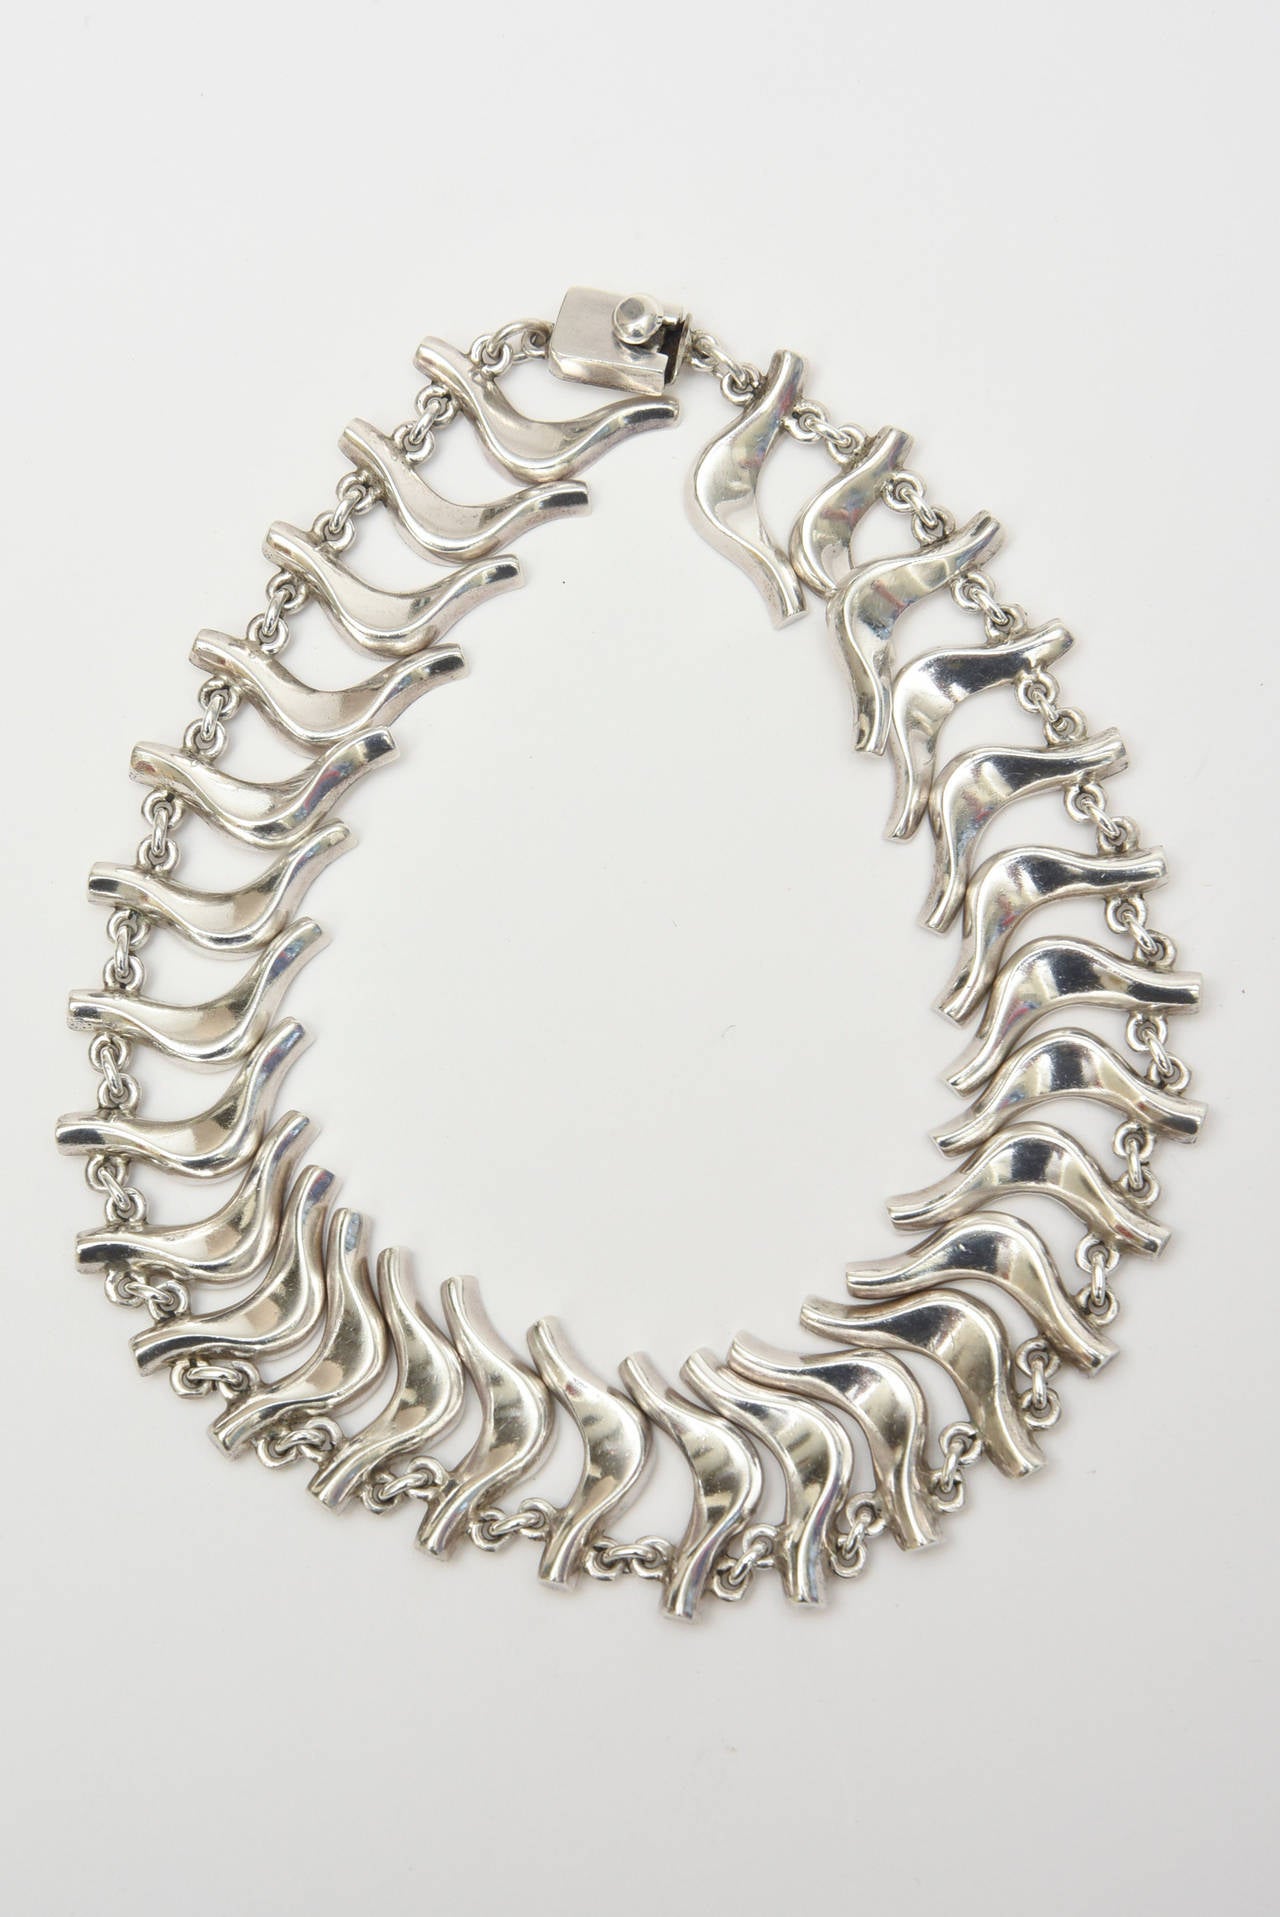 Cet ensemble d'un collier mexicain en argent sterling a des formes abstraites semblables à celles d'un danseur. Il est poinçonné 